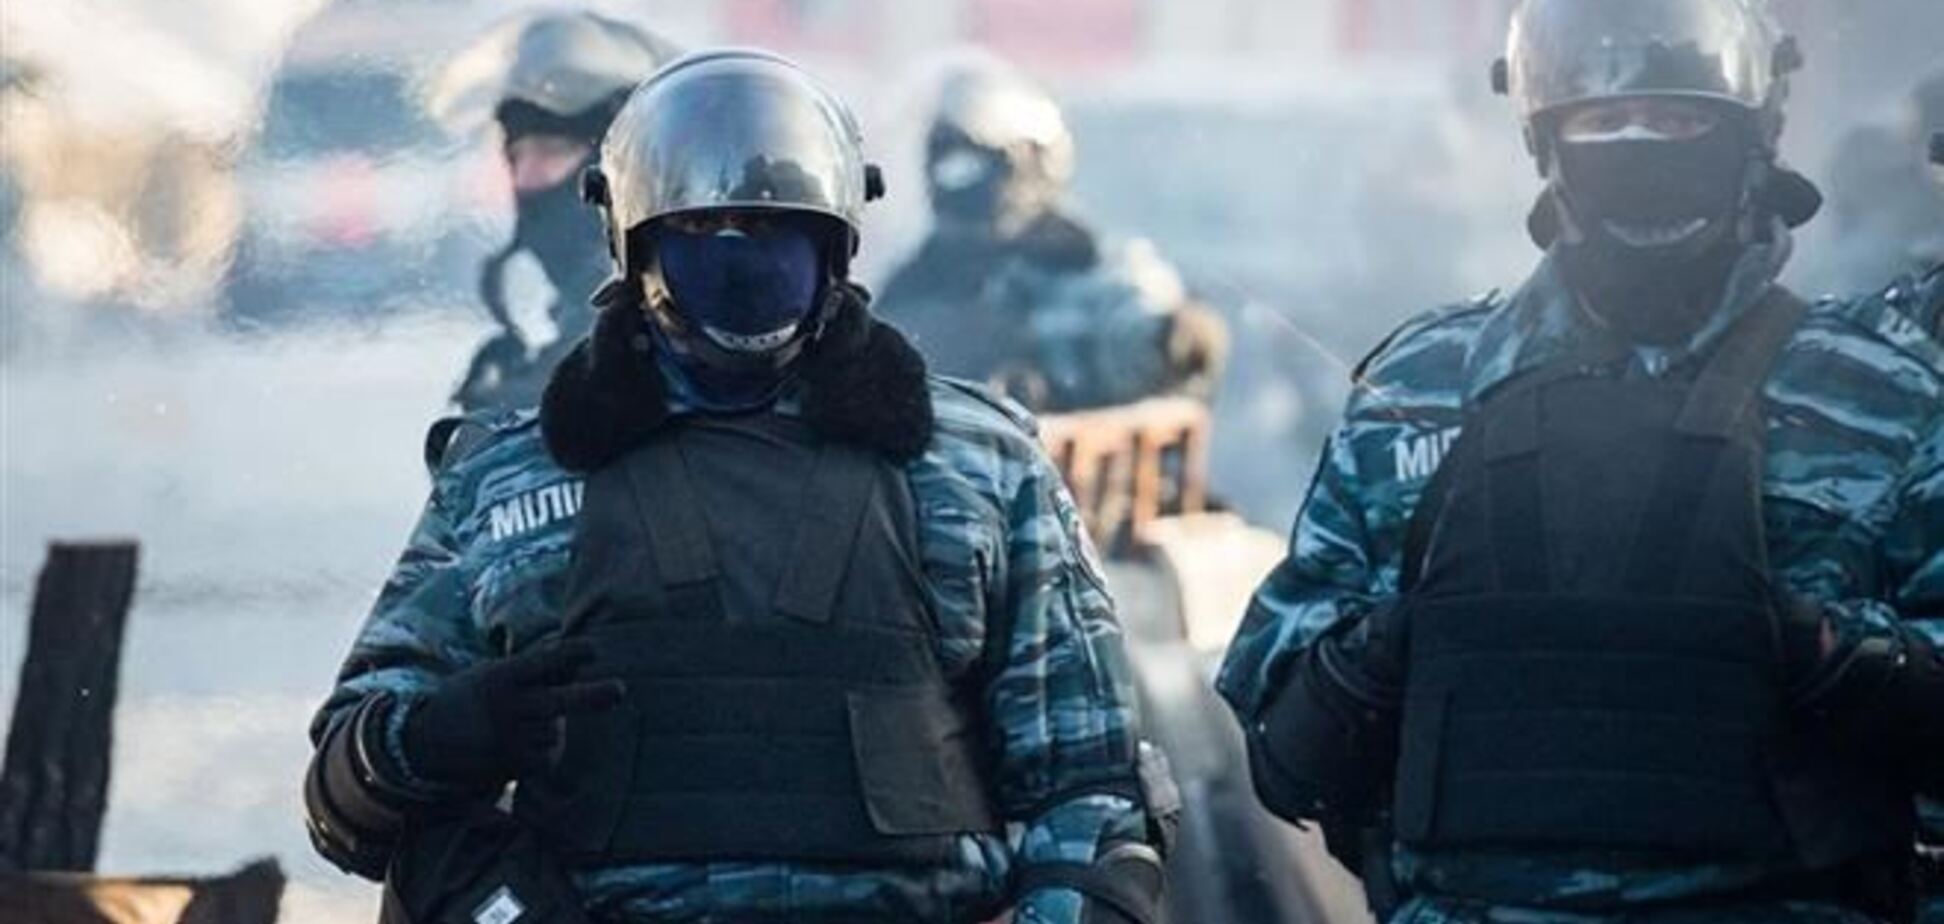 Эксперт: личные амбиции силовиков ставят под угрозу компромисс и мир в Украине